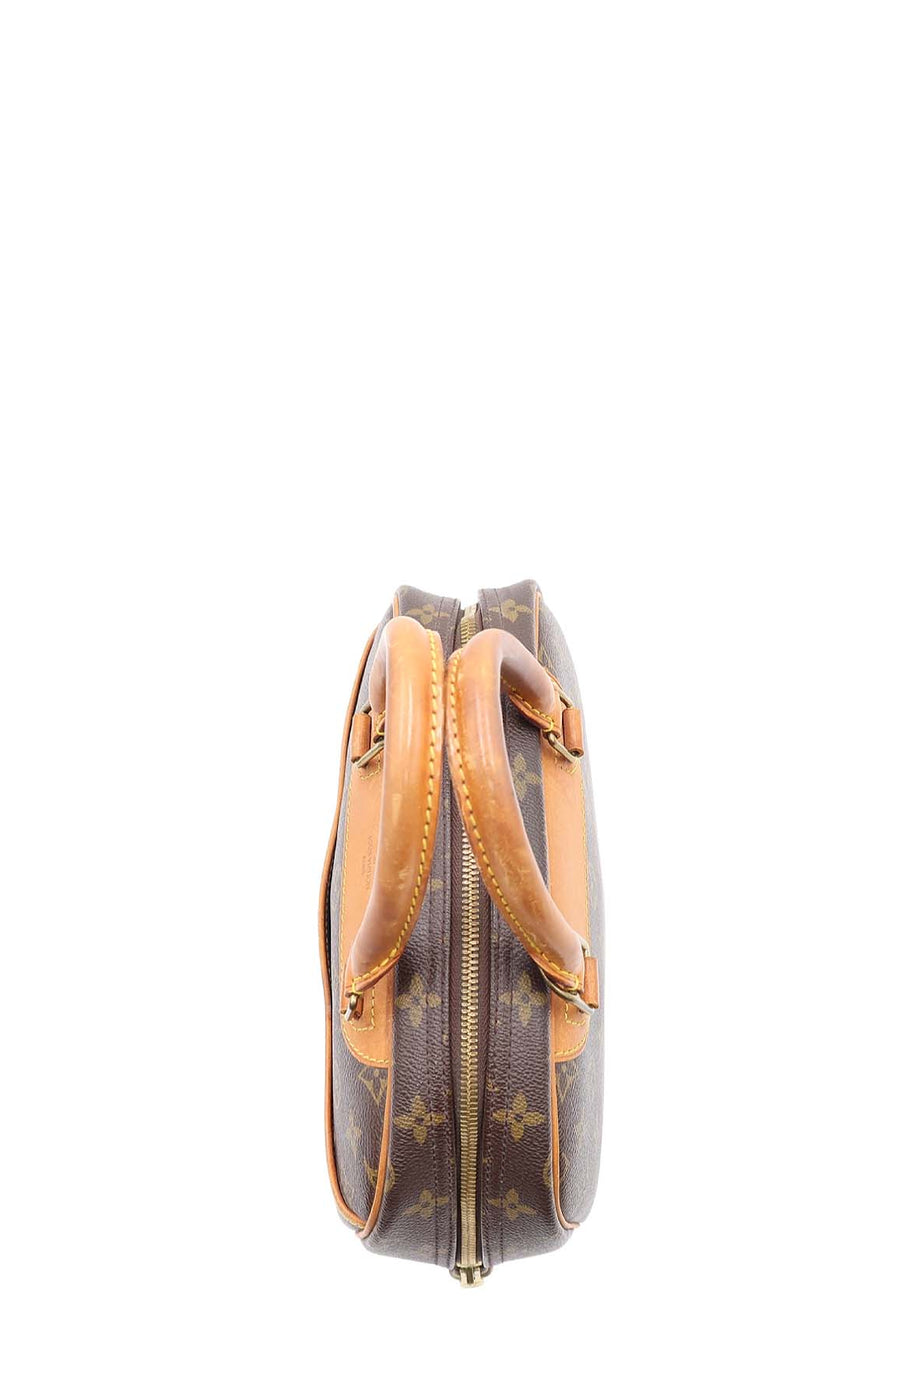 Louis Vuitton Trouville Handbag Monogram Canvas Brown 22176397